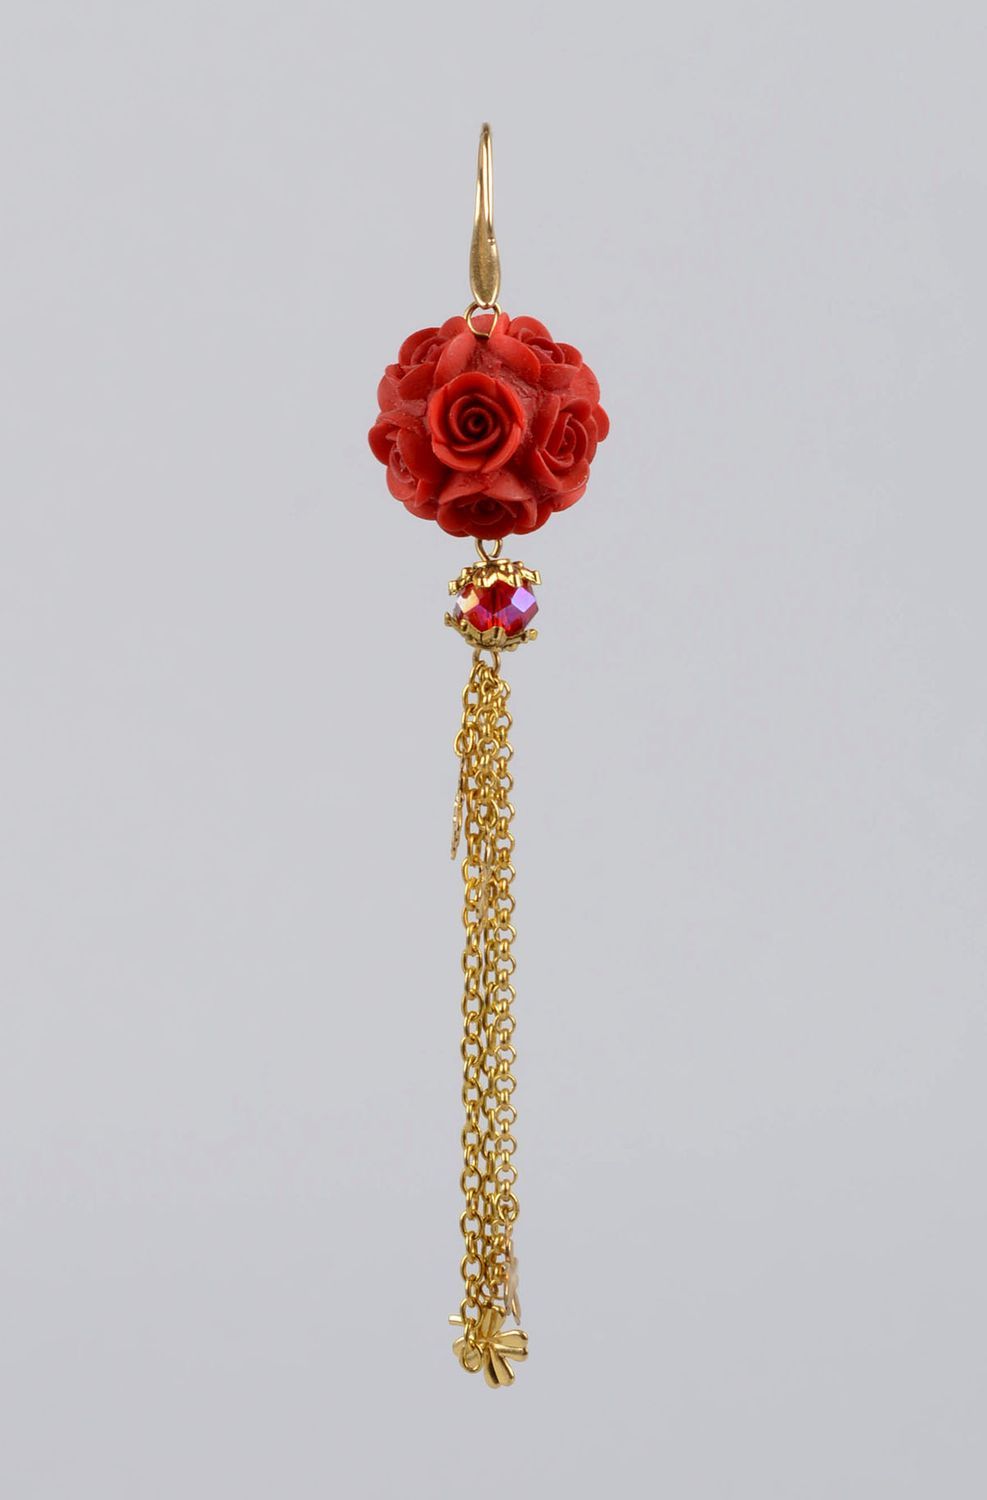 Серьги ручной работы украшение из полимерной глины красные розы длинные серьги фото 1